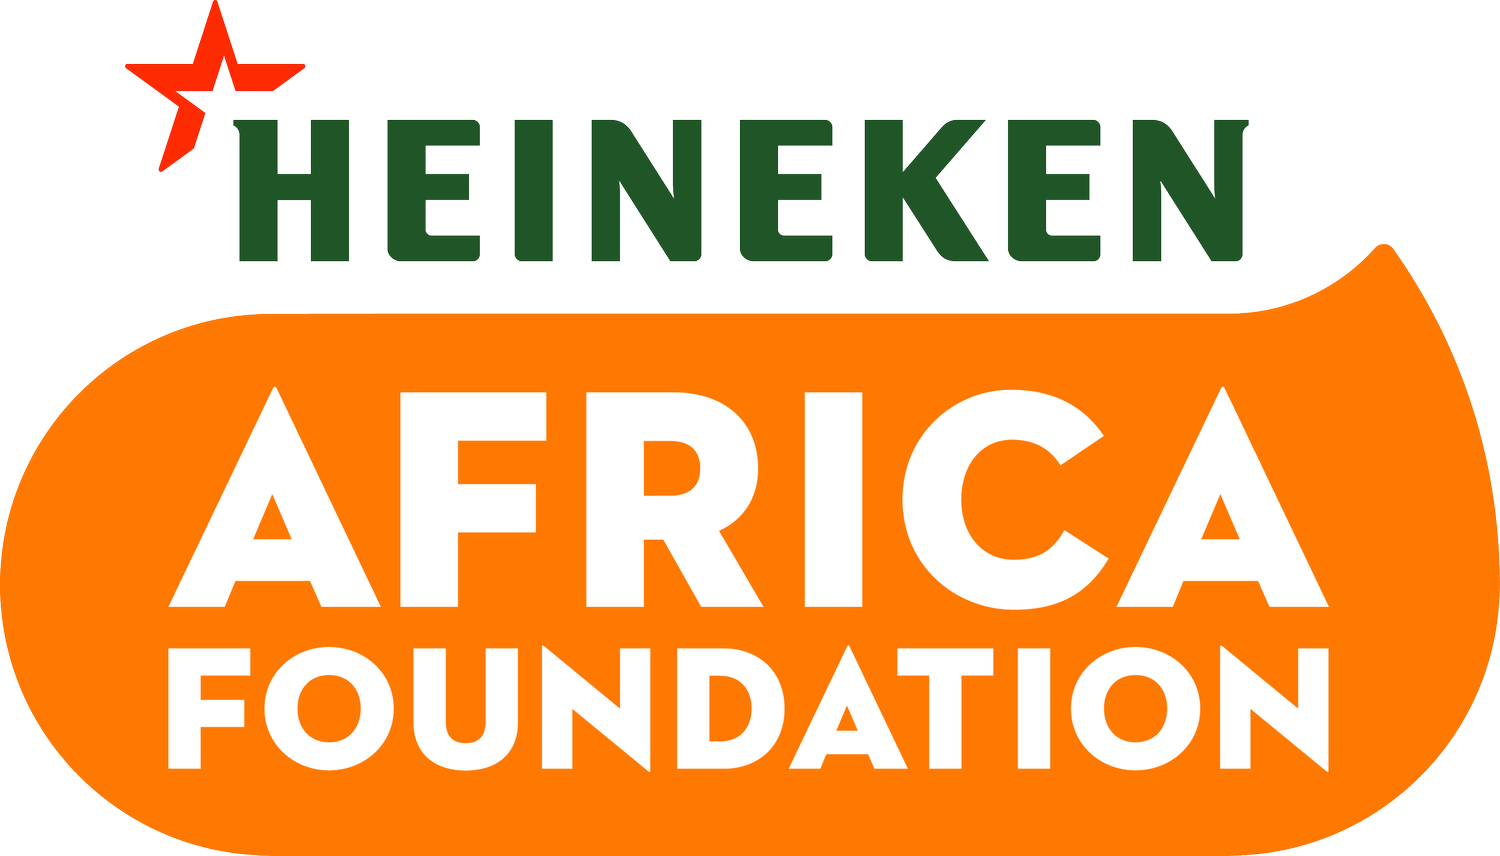 The HEINEKEN Africa Foundation